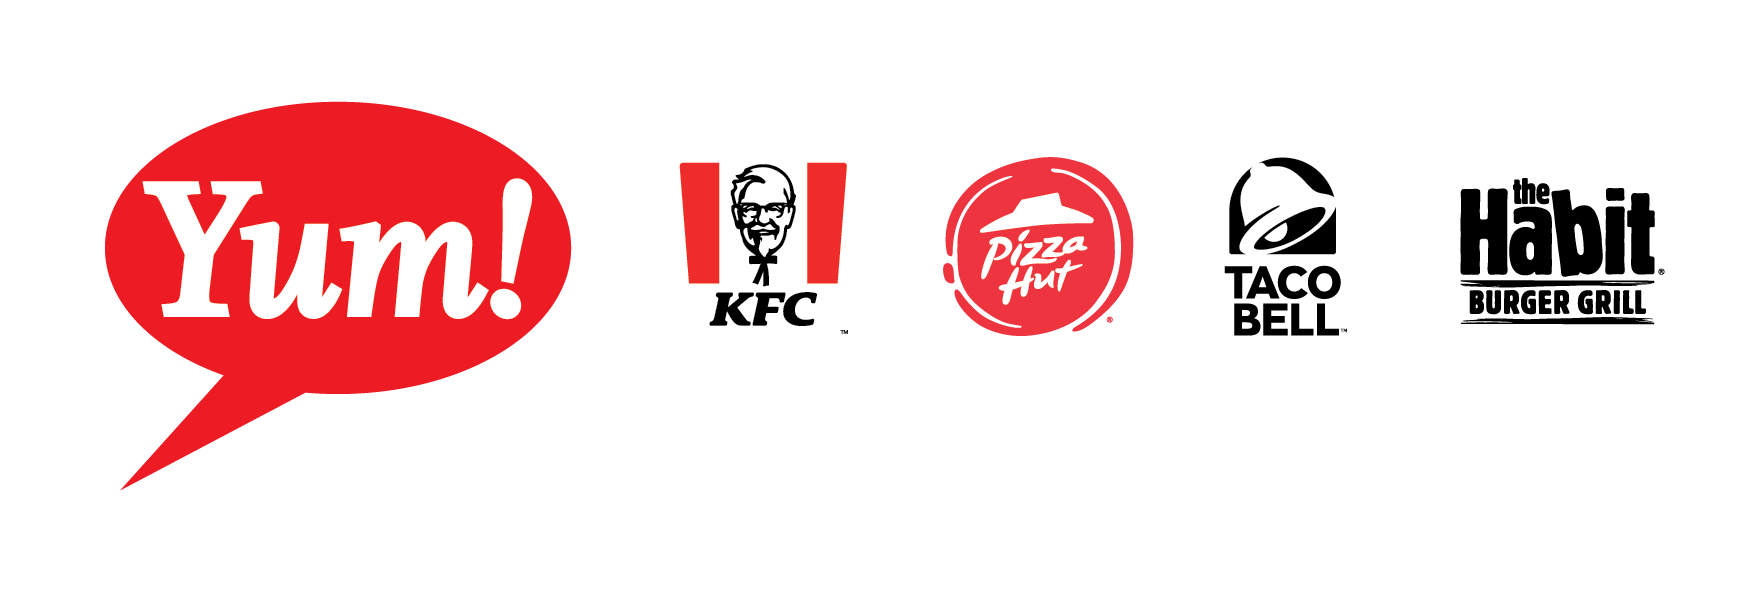 优美Brands公司、KFC公司、Pizza Hut公司、Taco Bell公司和HatitburgerGrill公司标识